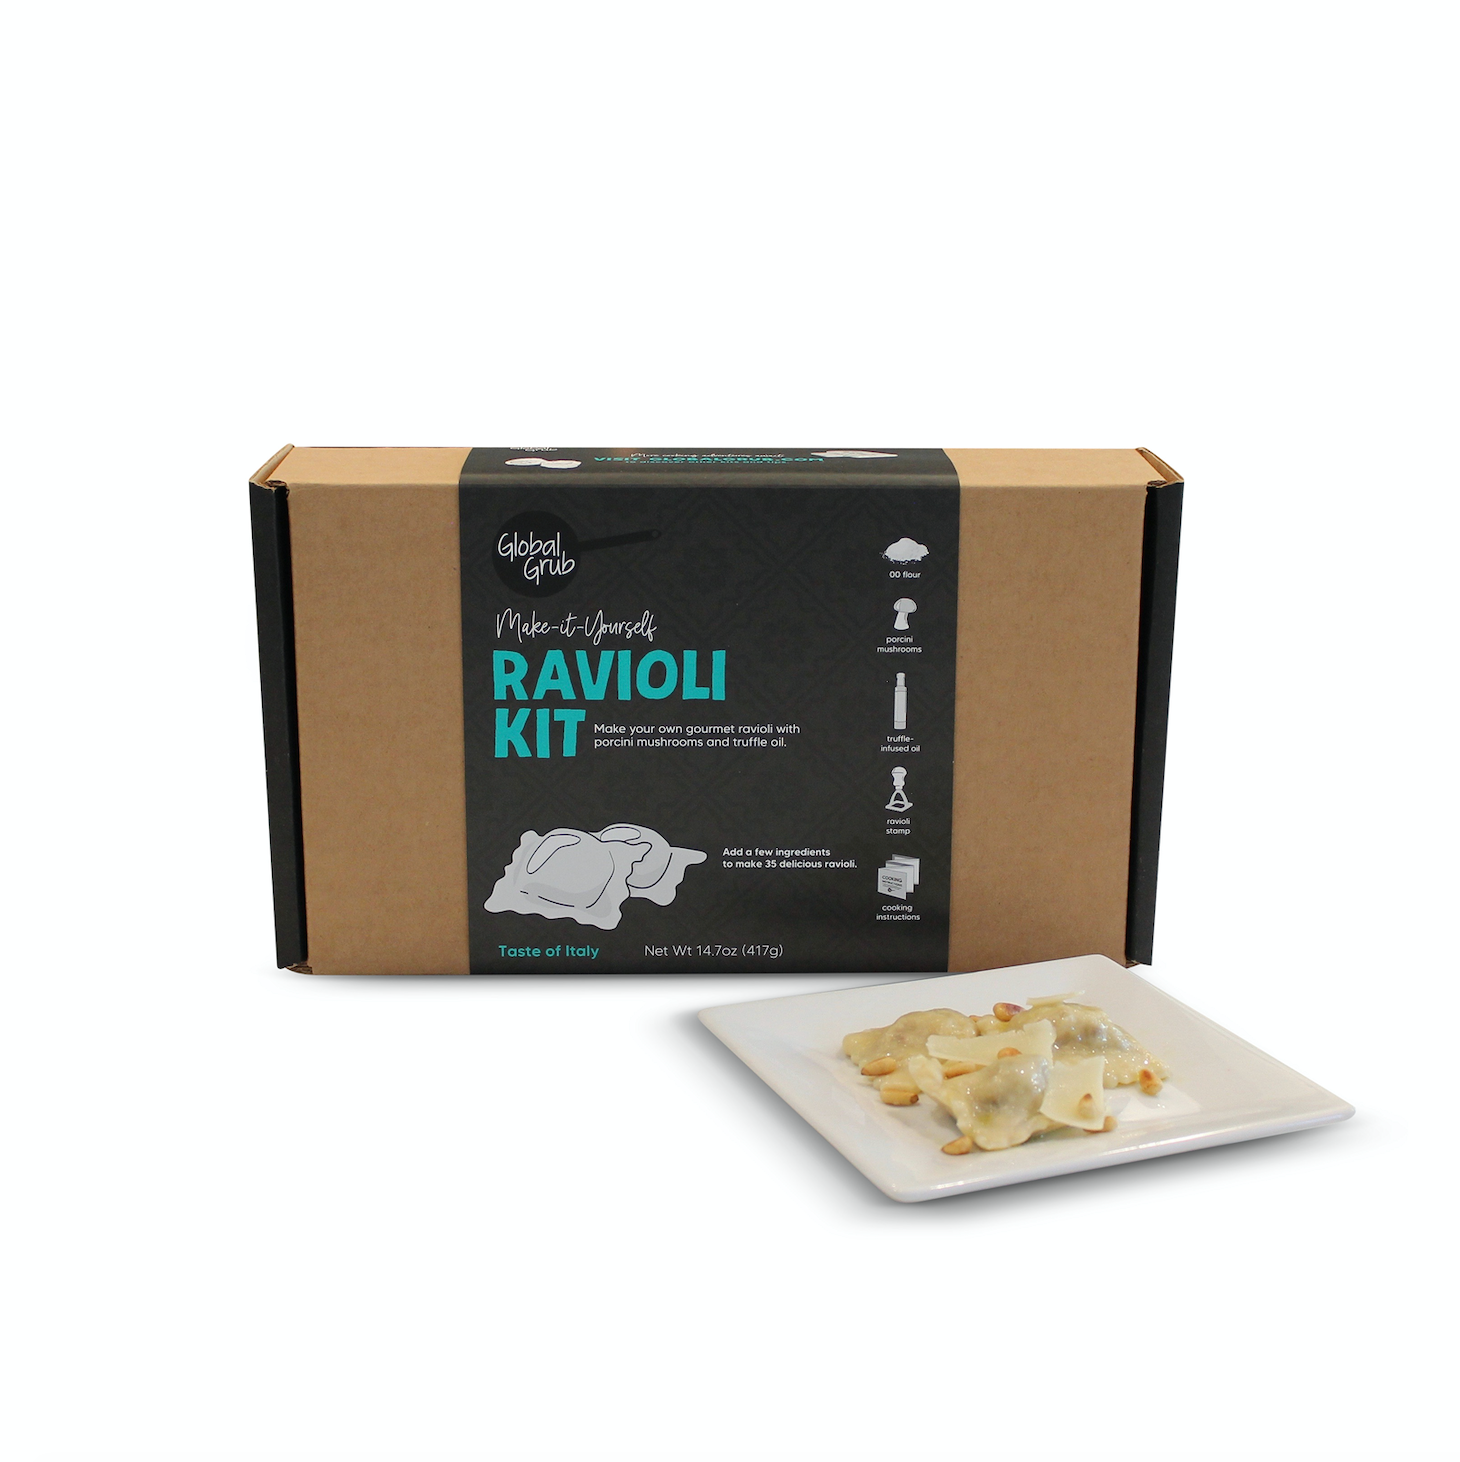 Ravioli Making Kit – Jones & Daughters